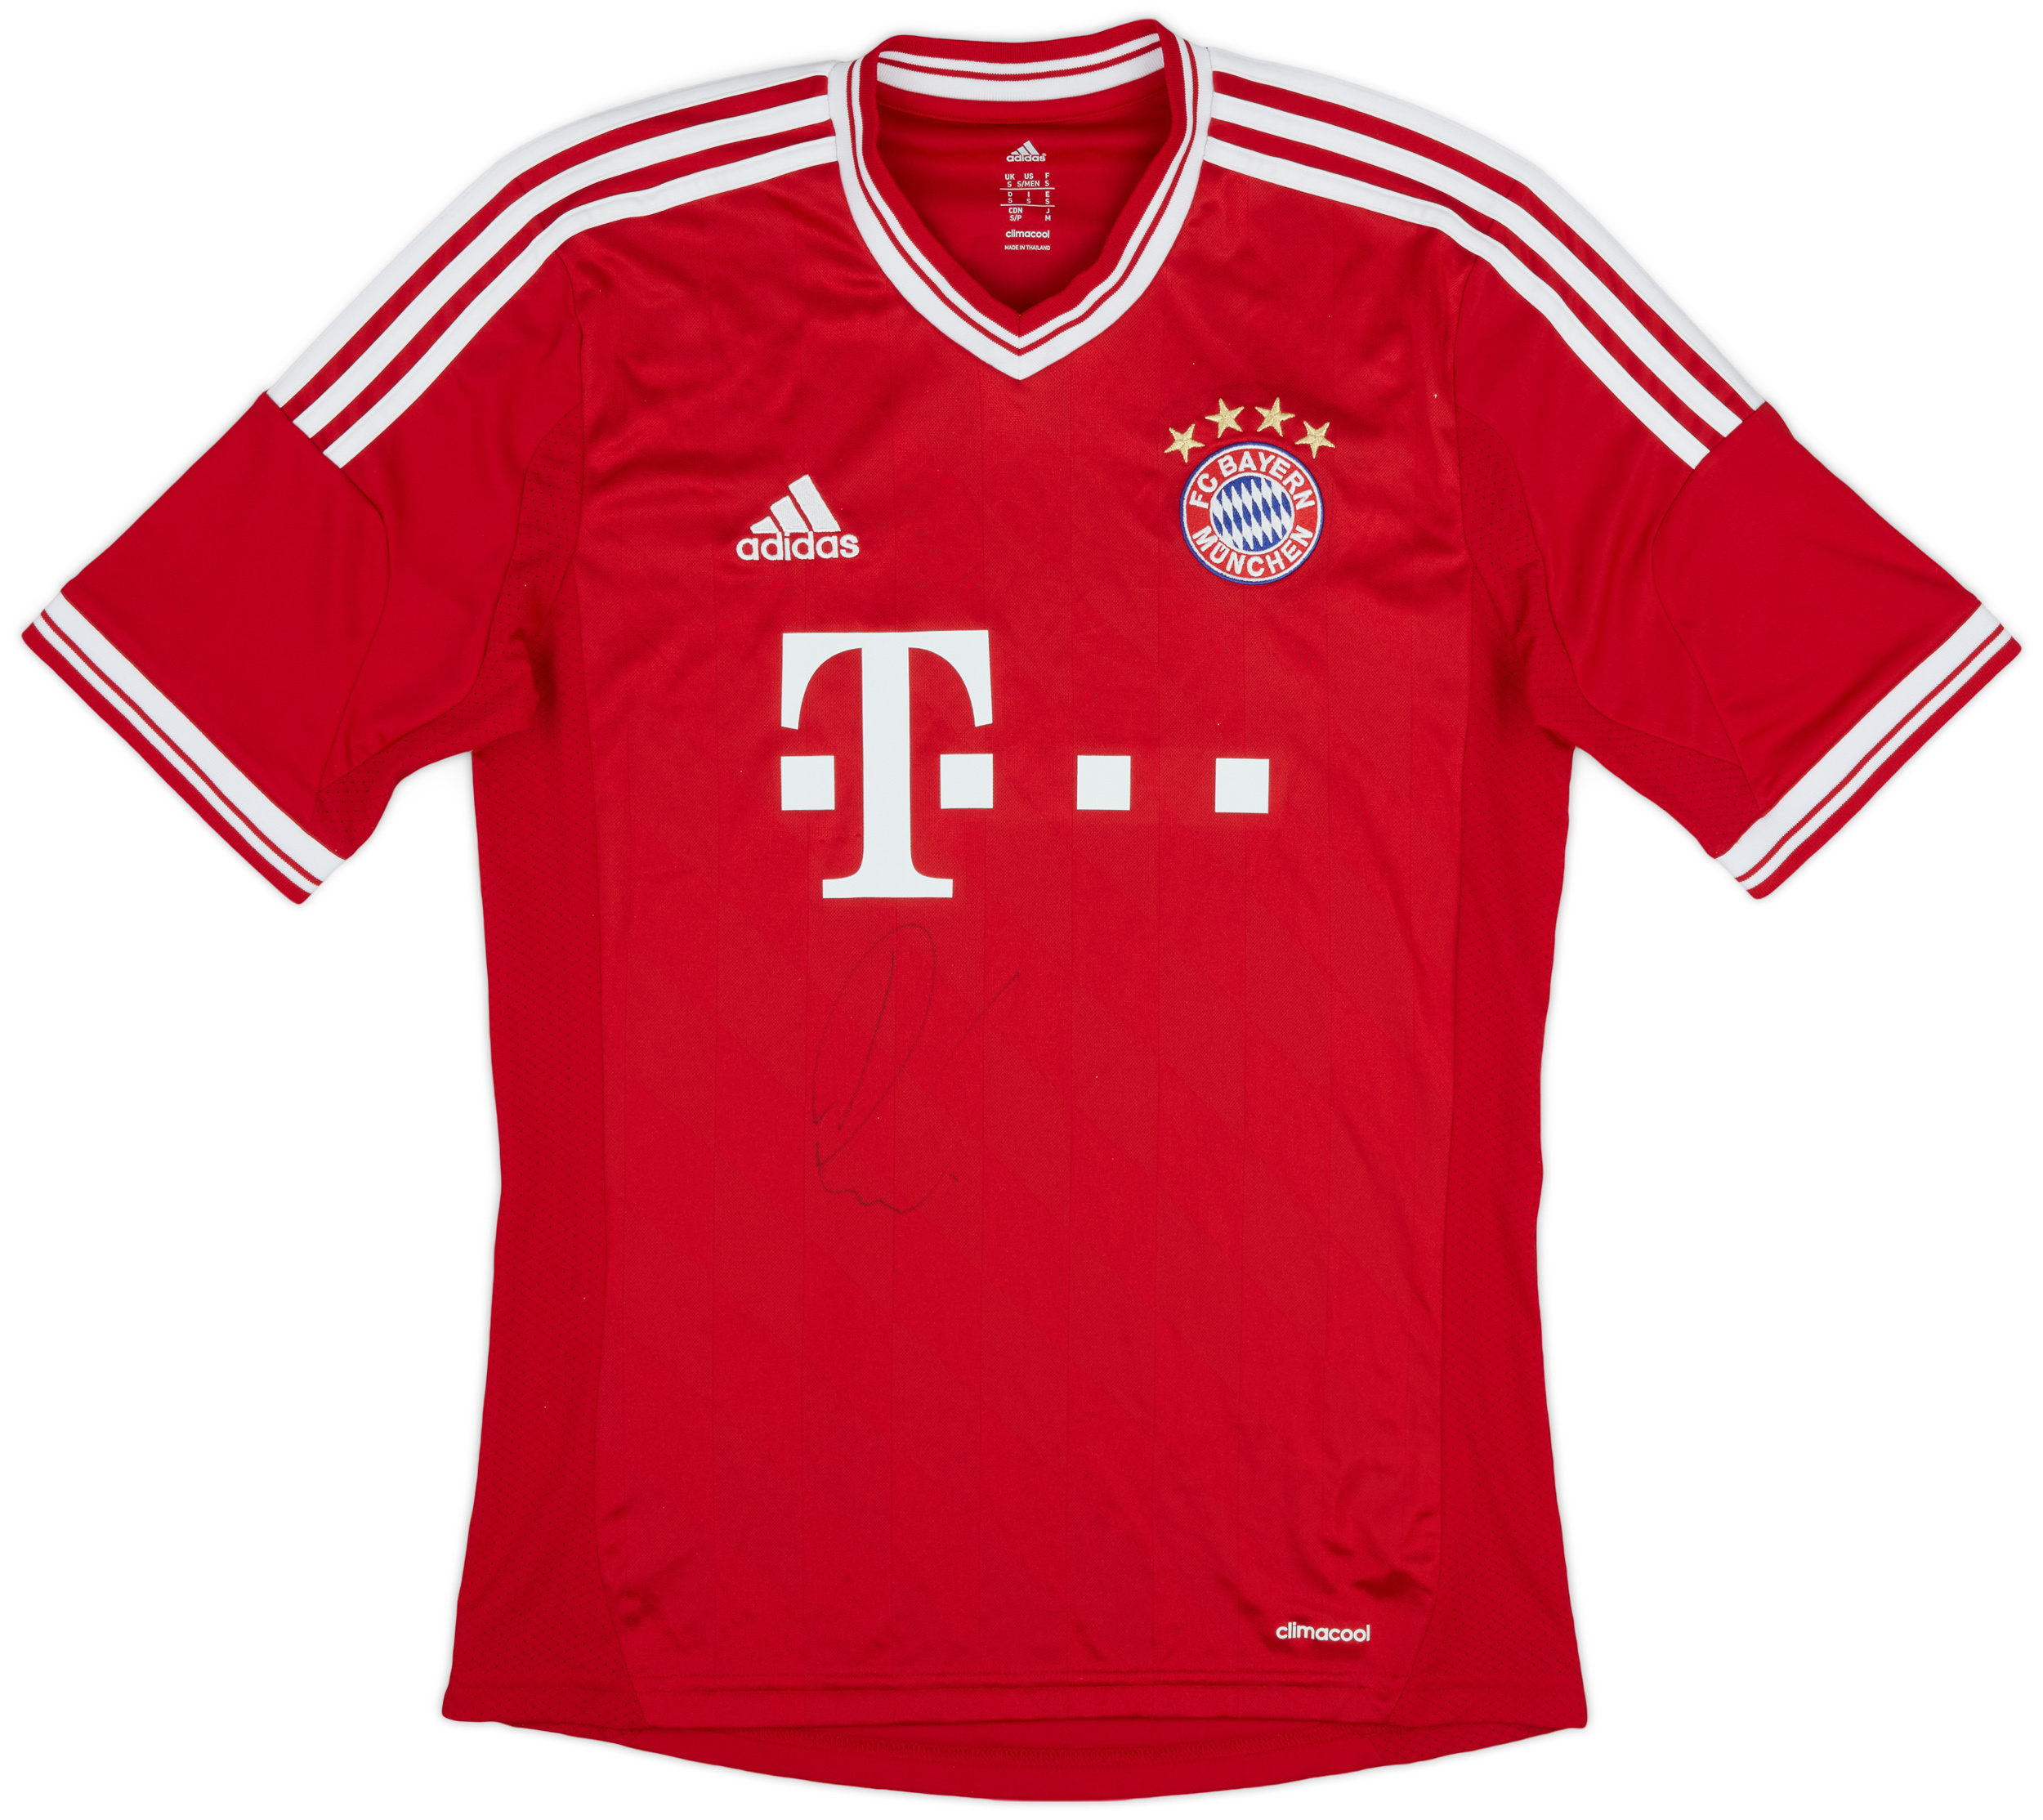 2013-14 Bayern Munich Signed Home Shirt - 9/10 - ()